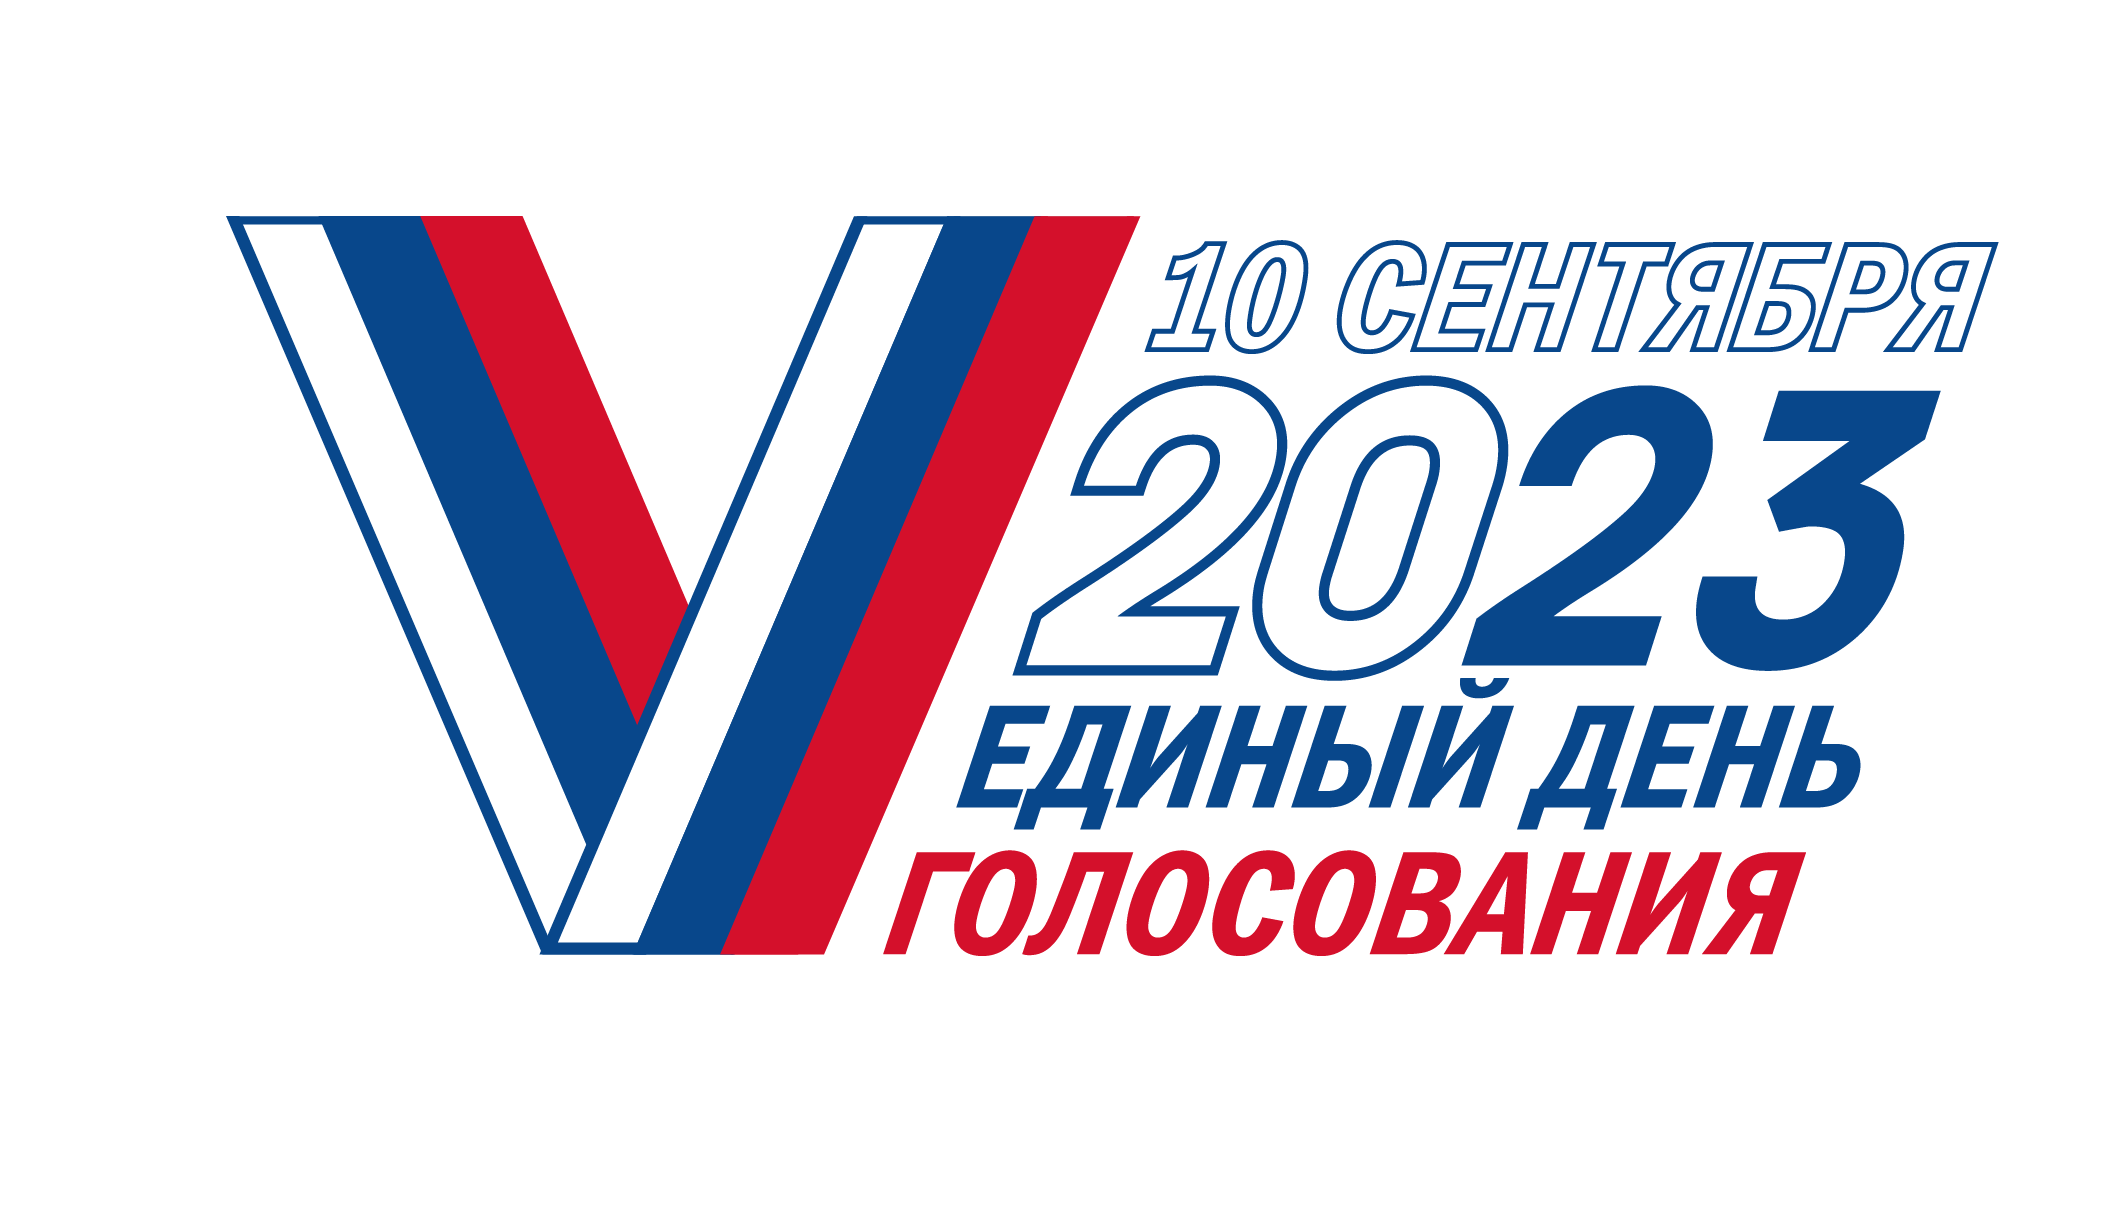 Голосуем за россию 2024 вместе